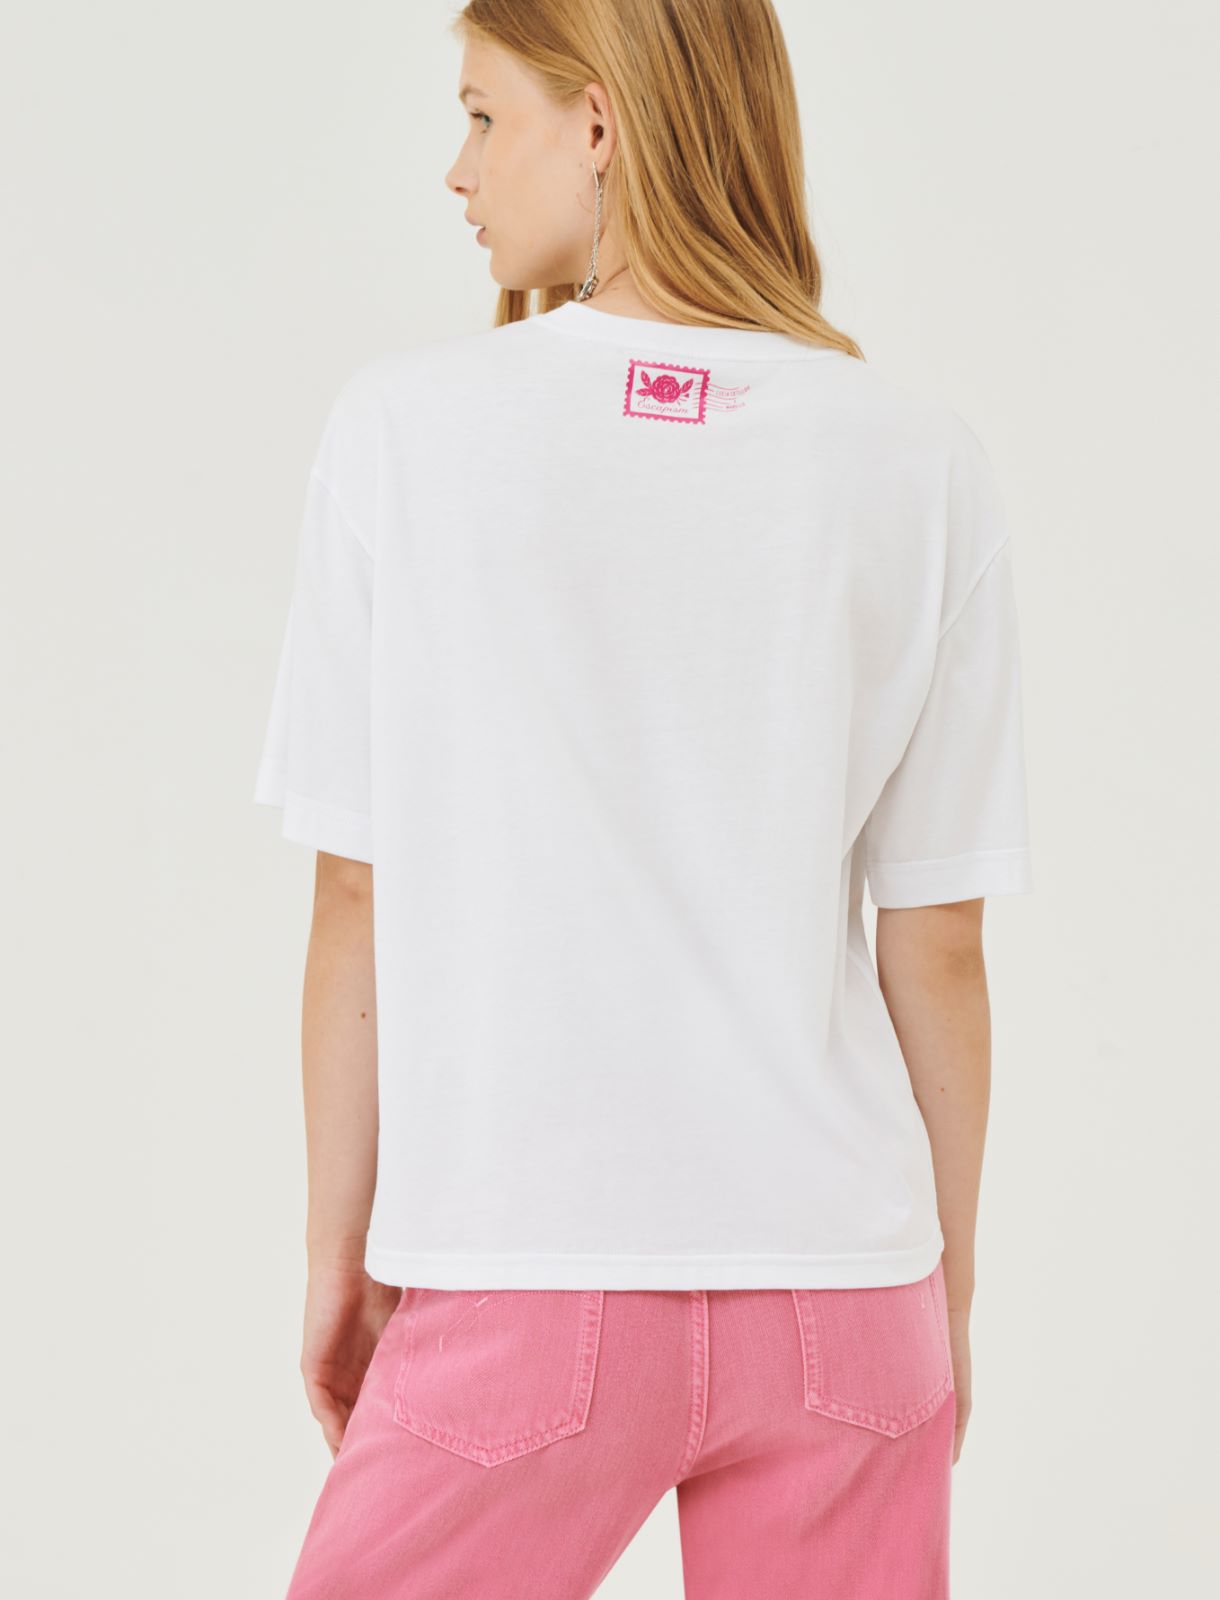 Boxy-fit T-shirt - Optical white - Marina Rinaldi - 2